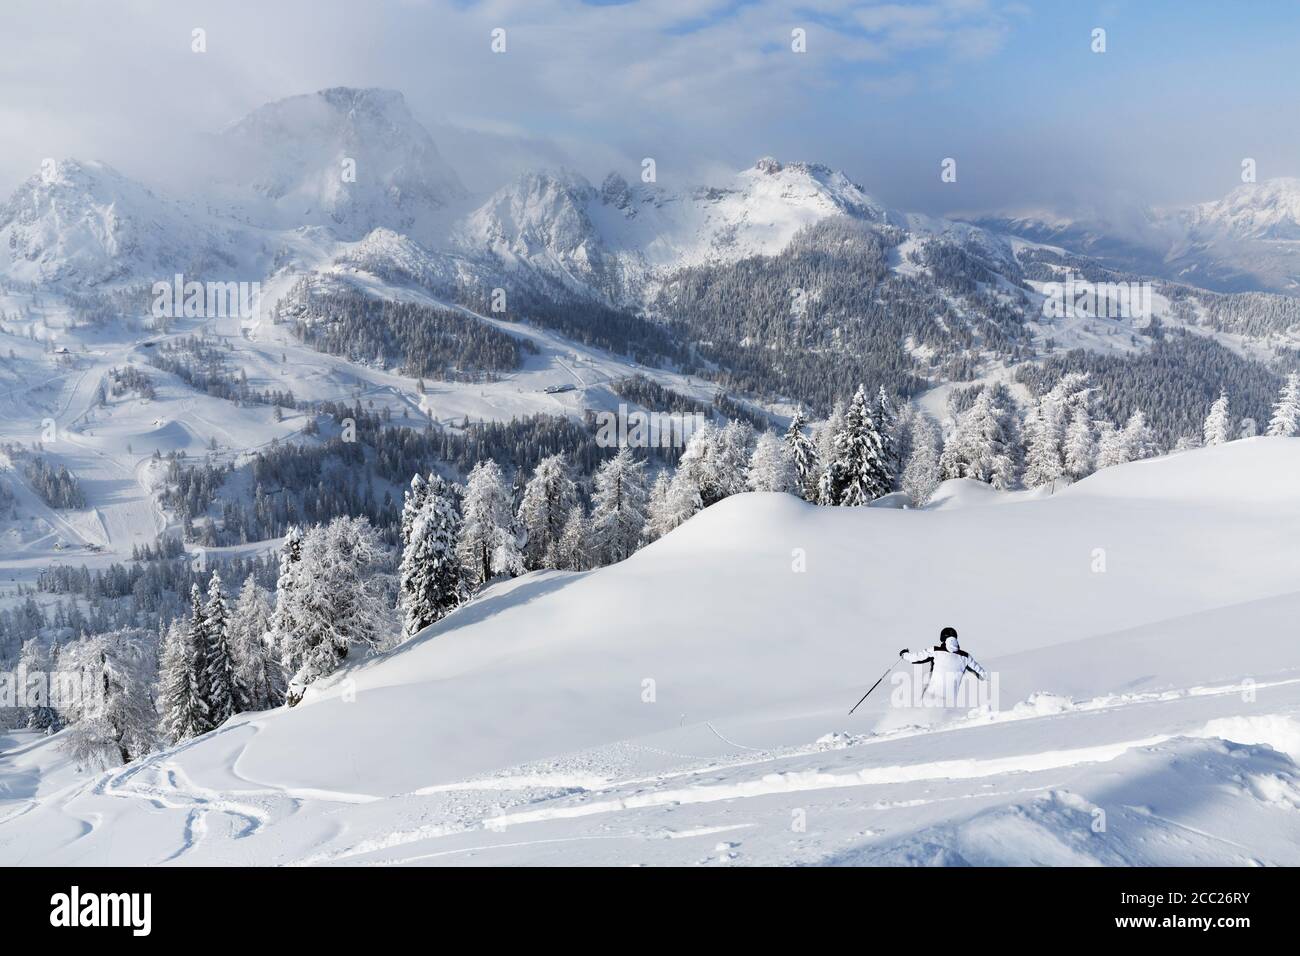 Austria, Carinthia, Person skiing in snow Stock Photo